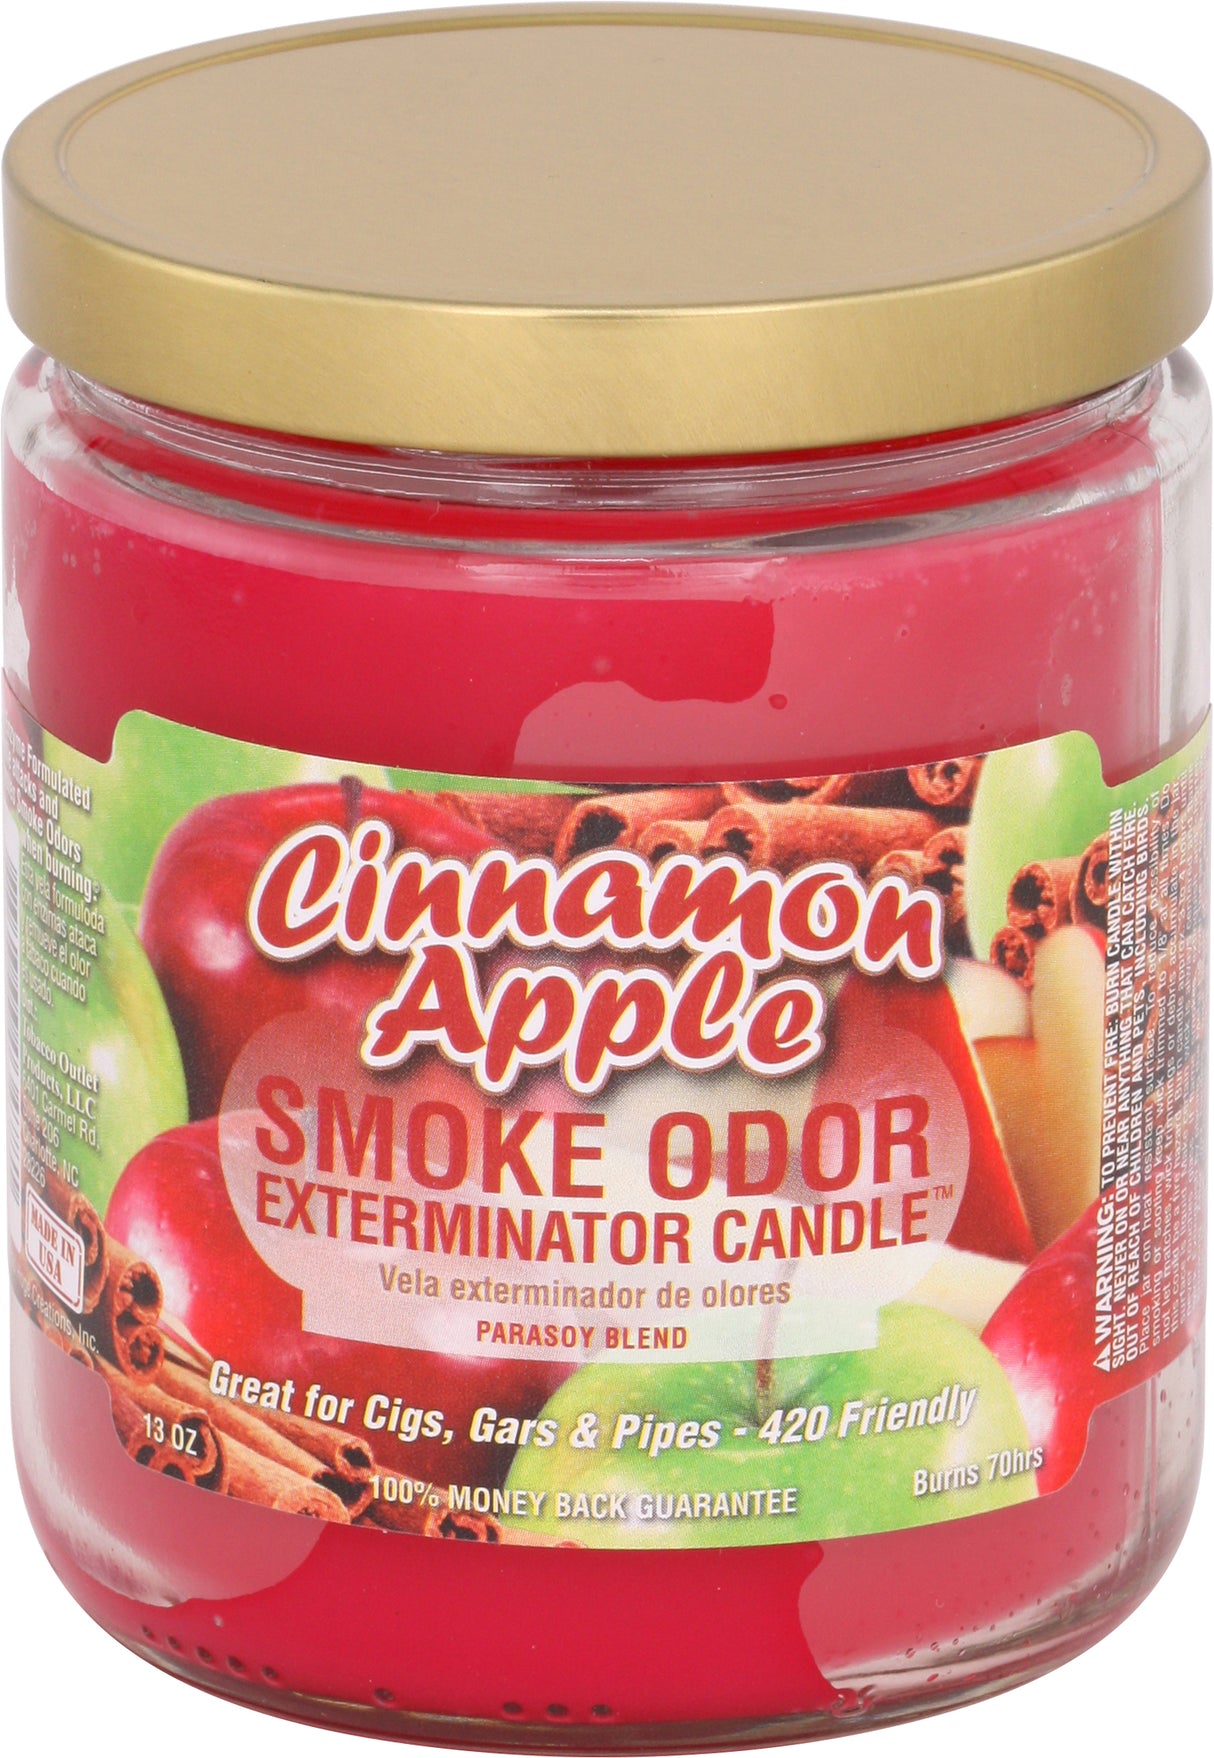 Smoke Odor 13 Oz. Candle: Cinnamon Apple